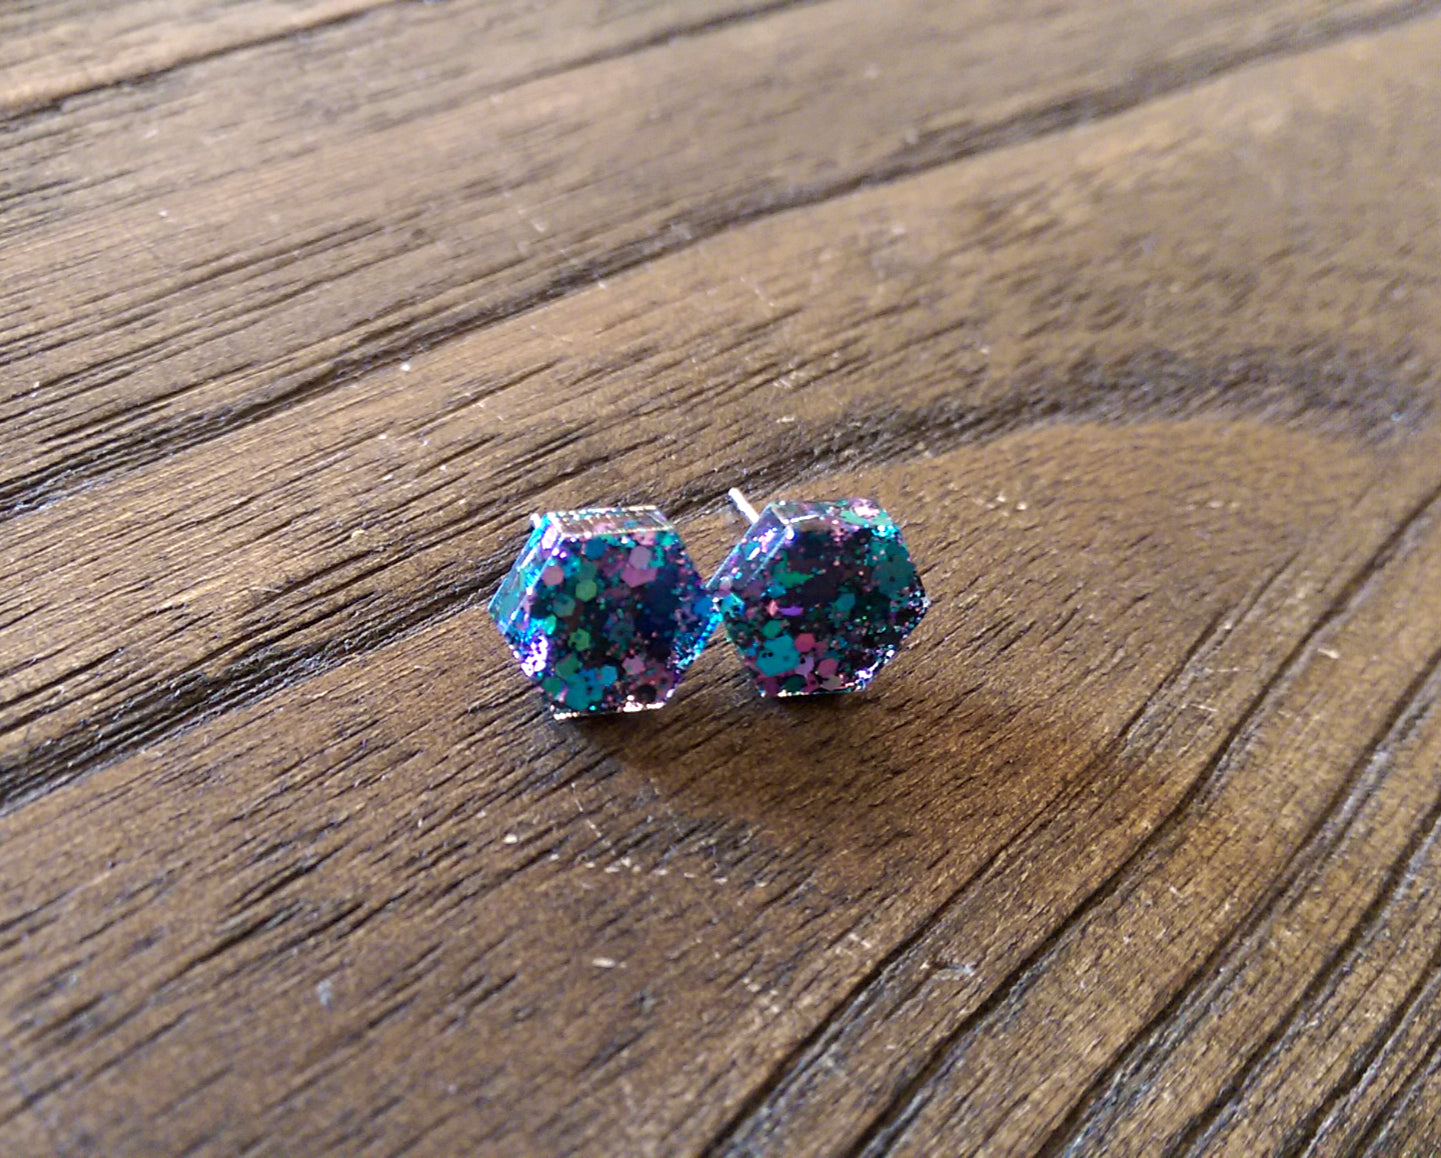 Hexagon Resin Stud Earrings, Teal Black Pink Glitter Earrings. Stainless Steel Stud Earrings. 10mm - Silver and Resin Designs